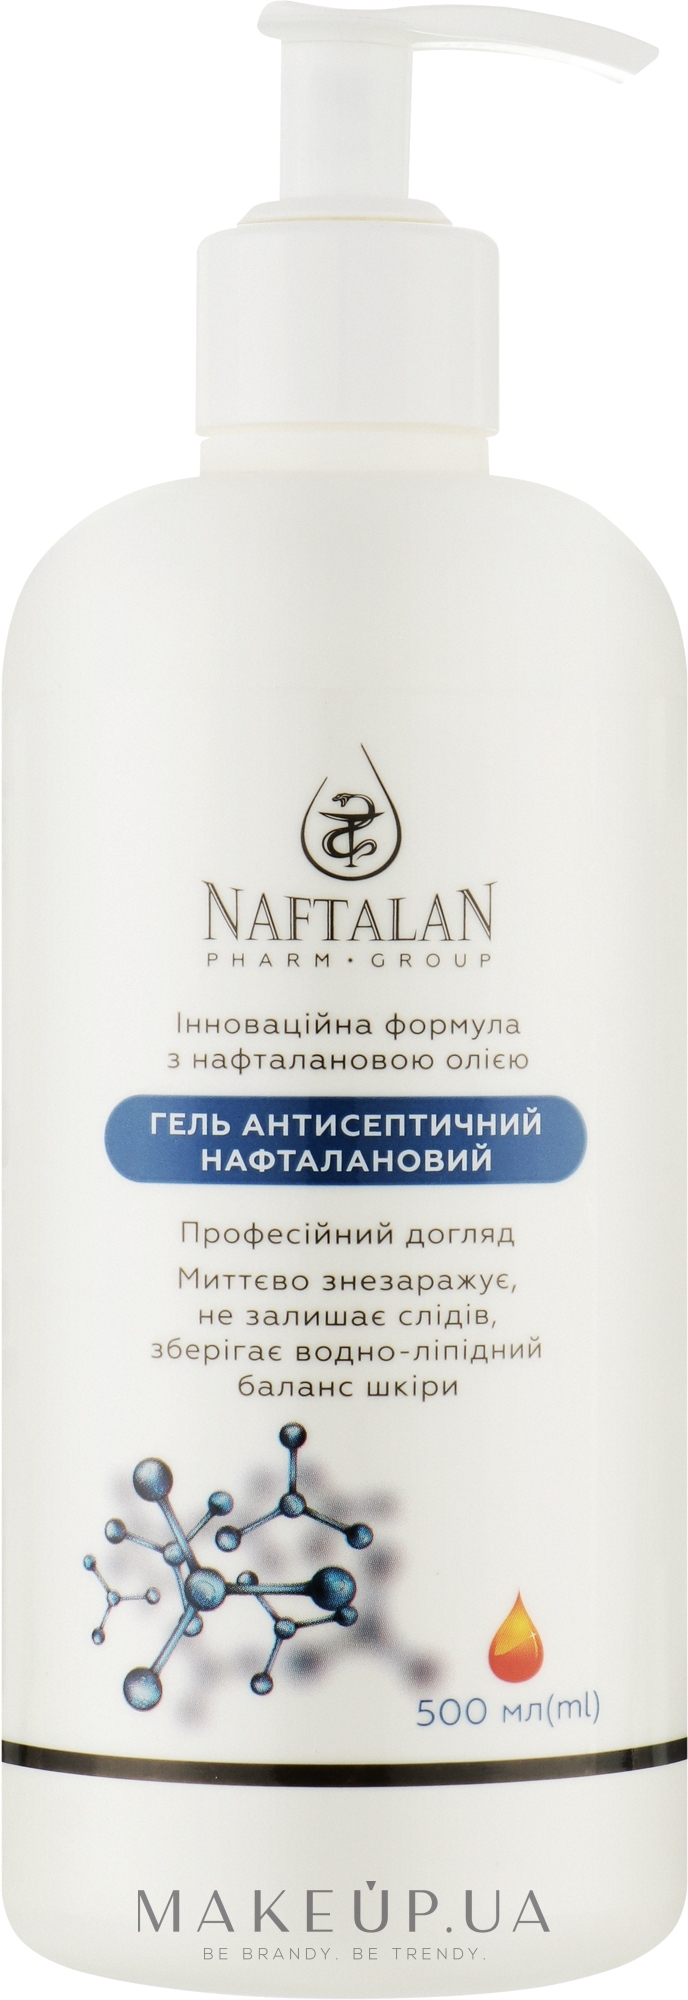 Гель антисептический нафталановый для рук - Naftalan Pharm Group — фото 500ml